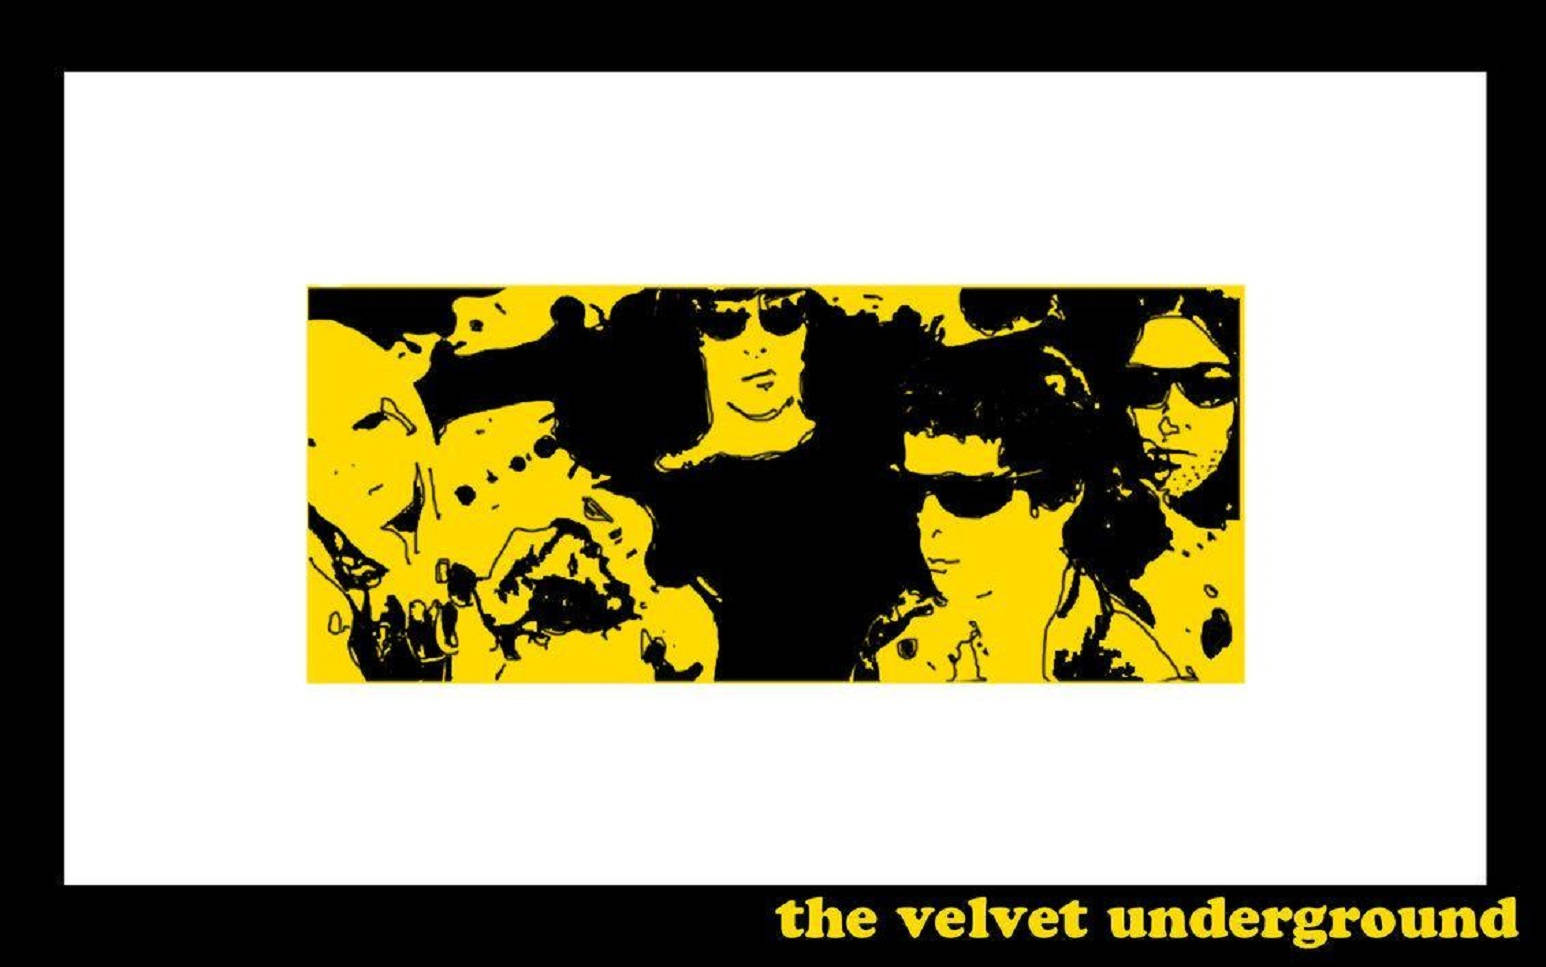 Nico og Velvet Underground Digital Art wallpaper Wallpaper